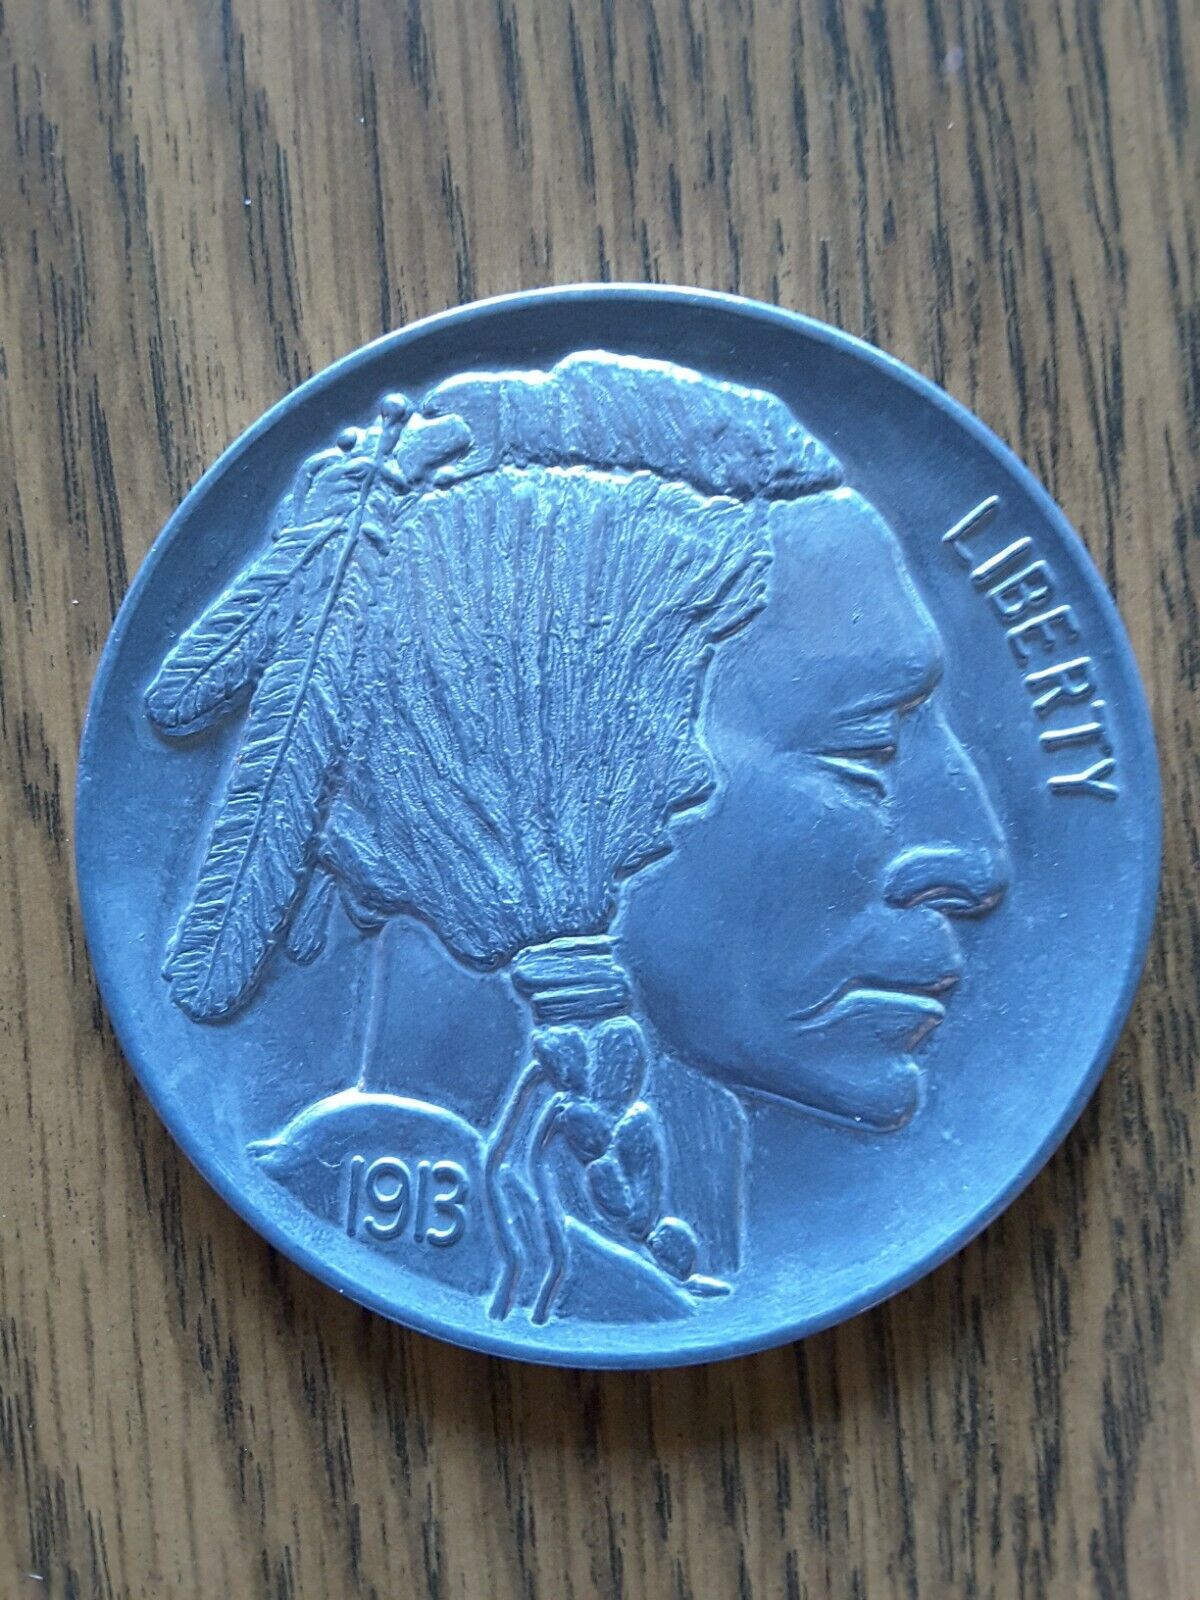 Commemorative 1913 Liberty Buffalo Indian Head Nickel Coin Token, 3\